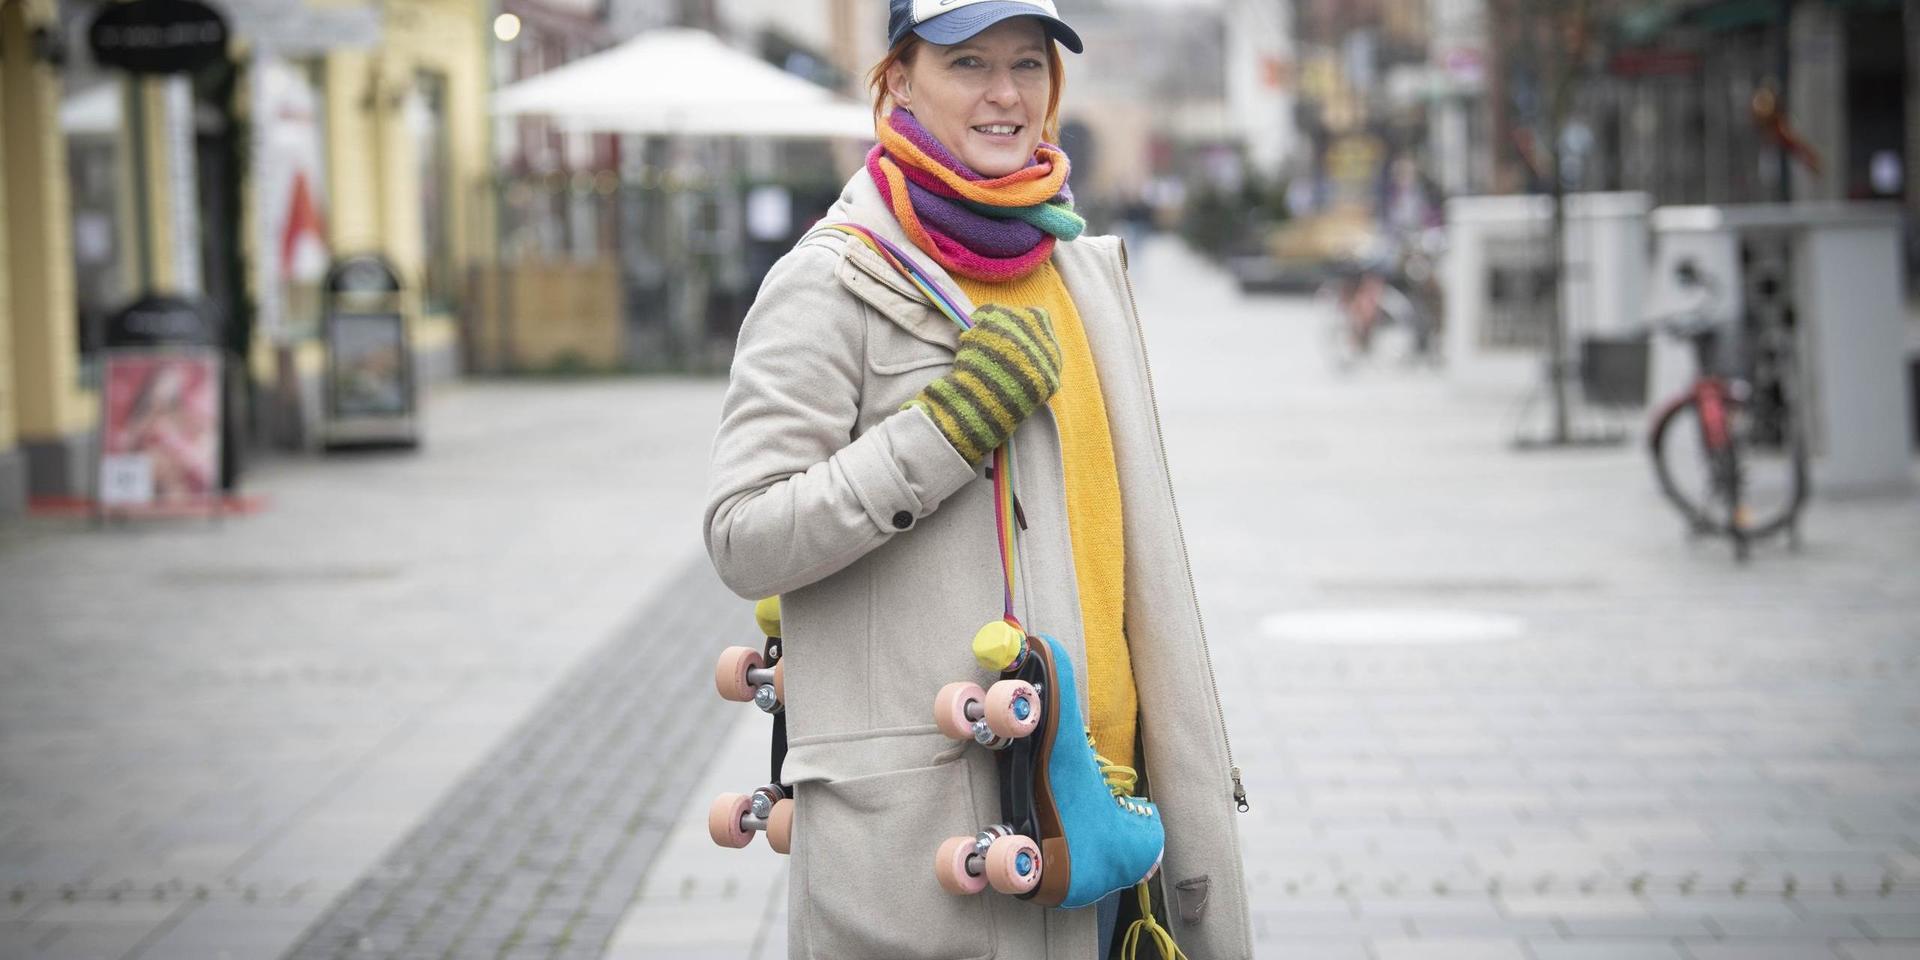 Kallt vinterväder stoppar inte Helena Spångfors från att köra rullskridskor.